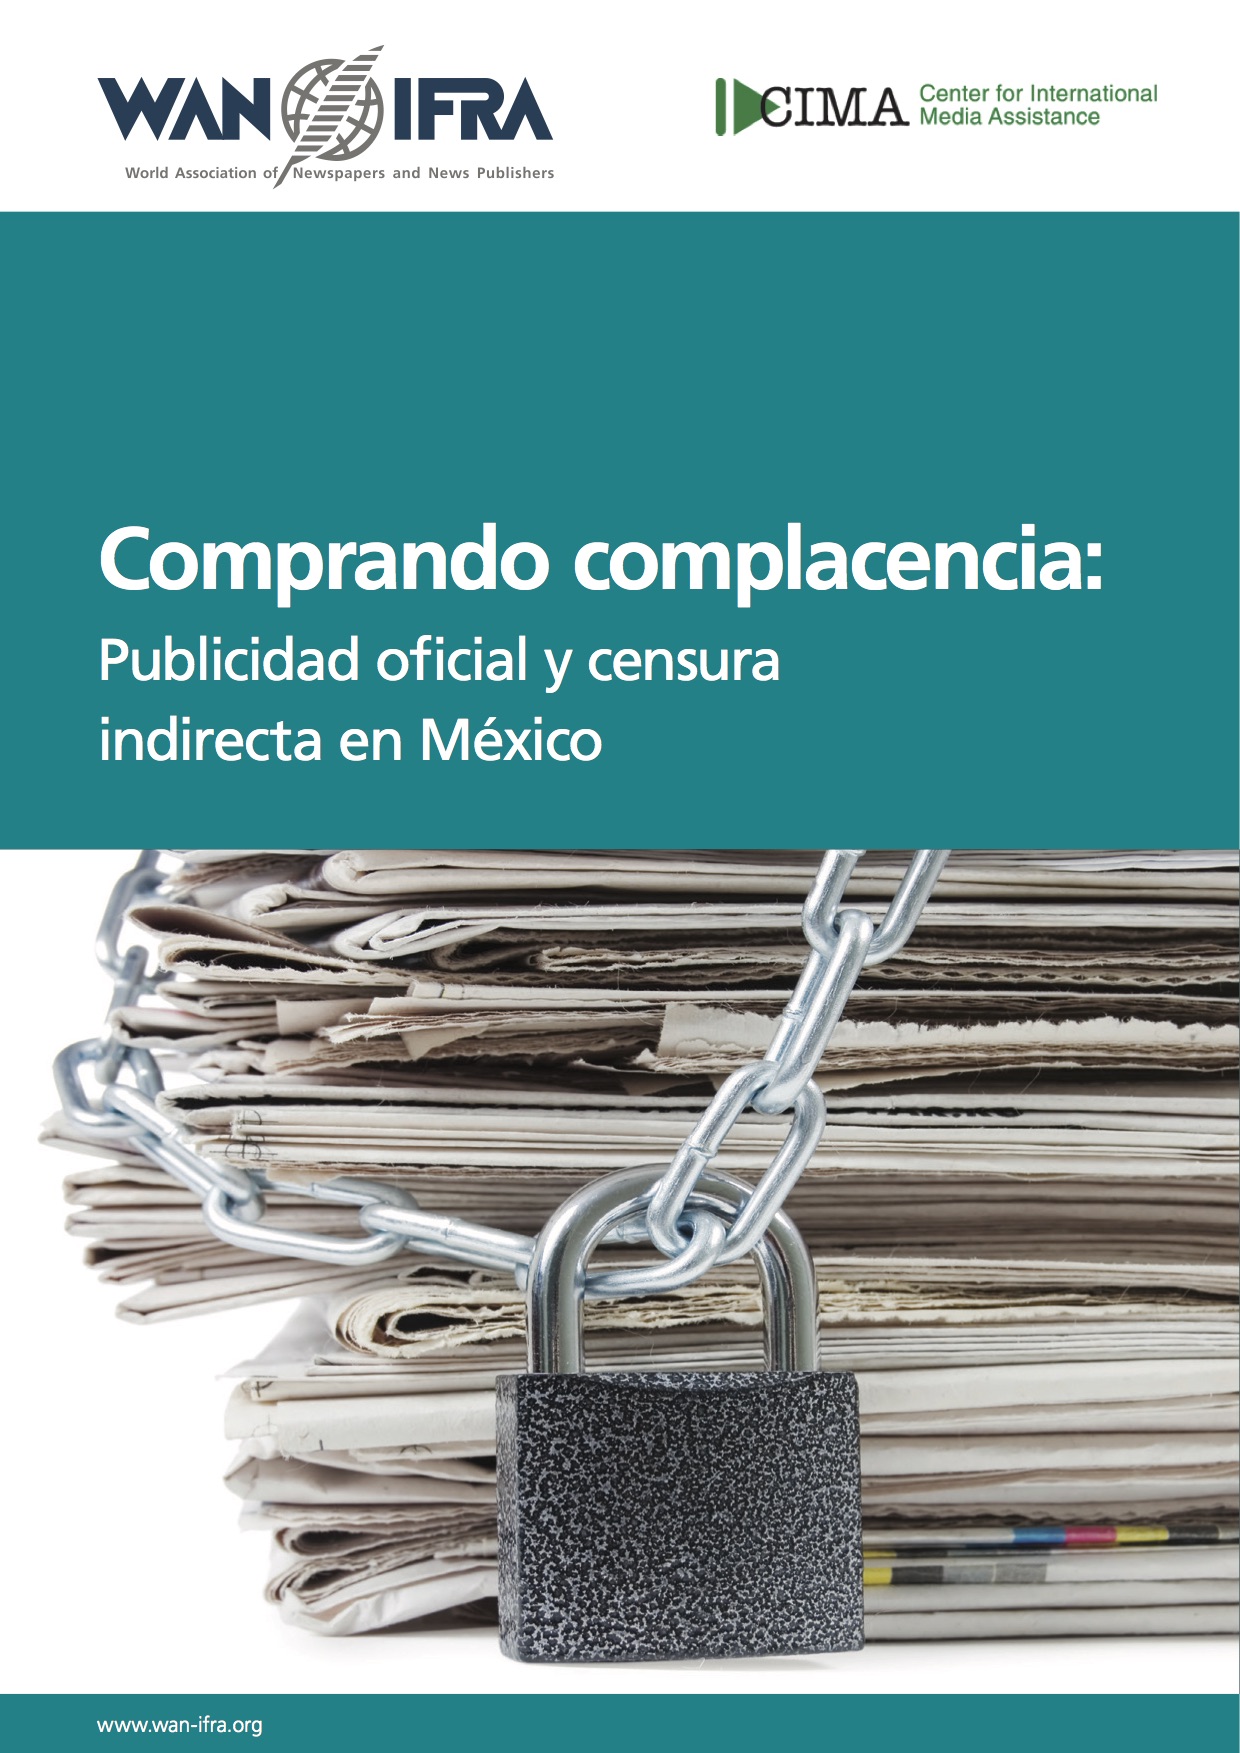 Portada de la investigación Comprando complacencia: Publicidad oficial y censura indirecta en México, publicado por WAN-IFRA y Proceso en 2014.